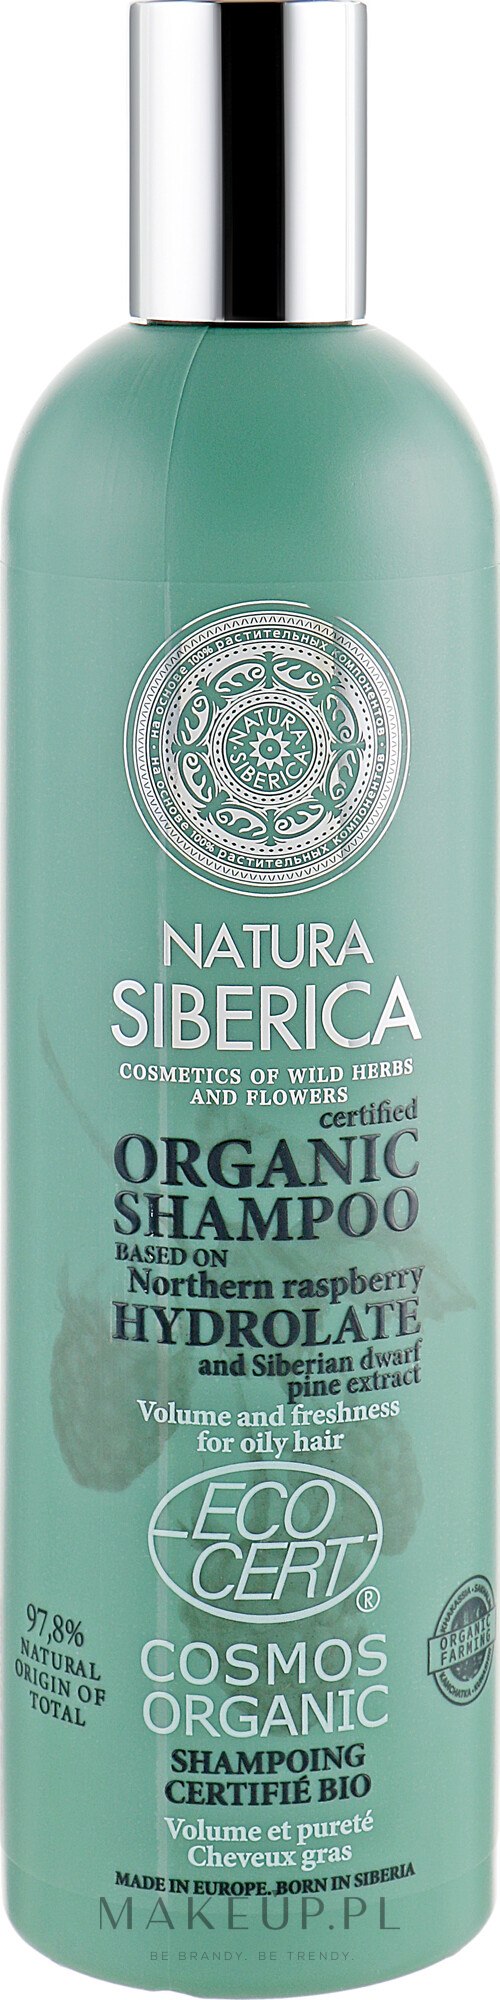 natura siberica szampon objetosc i nawilzenie wizaz